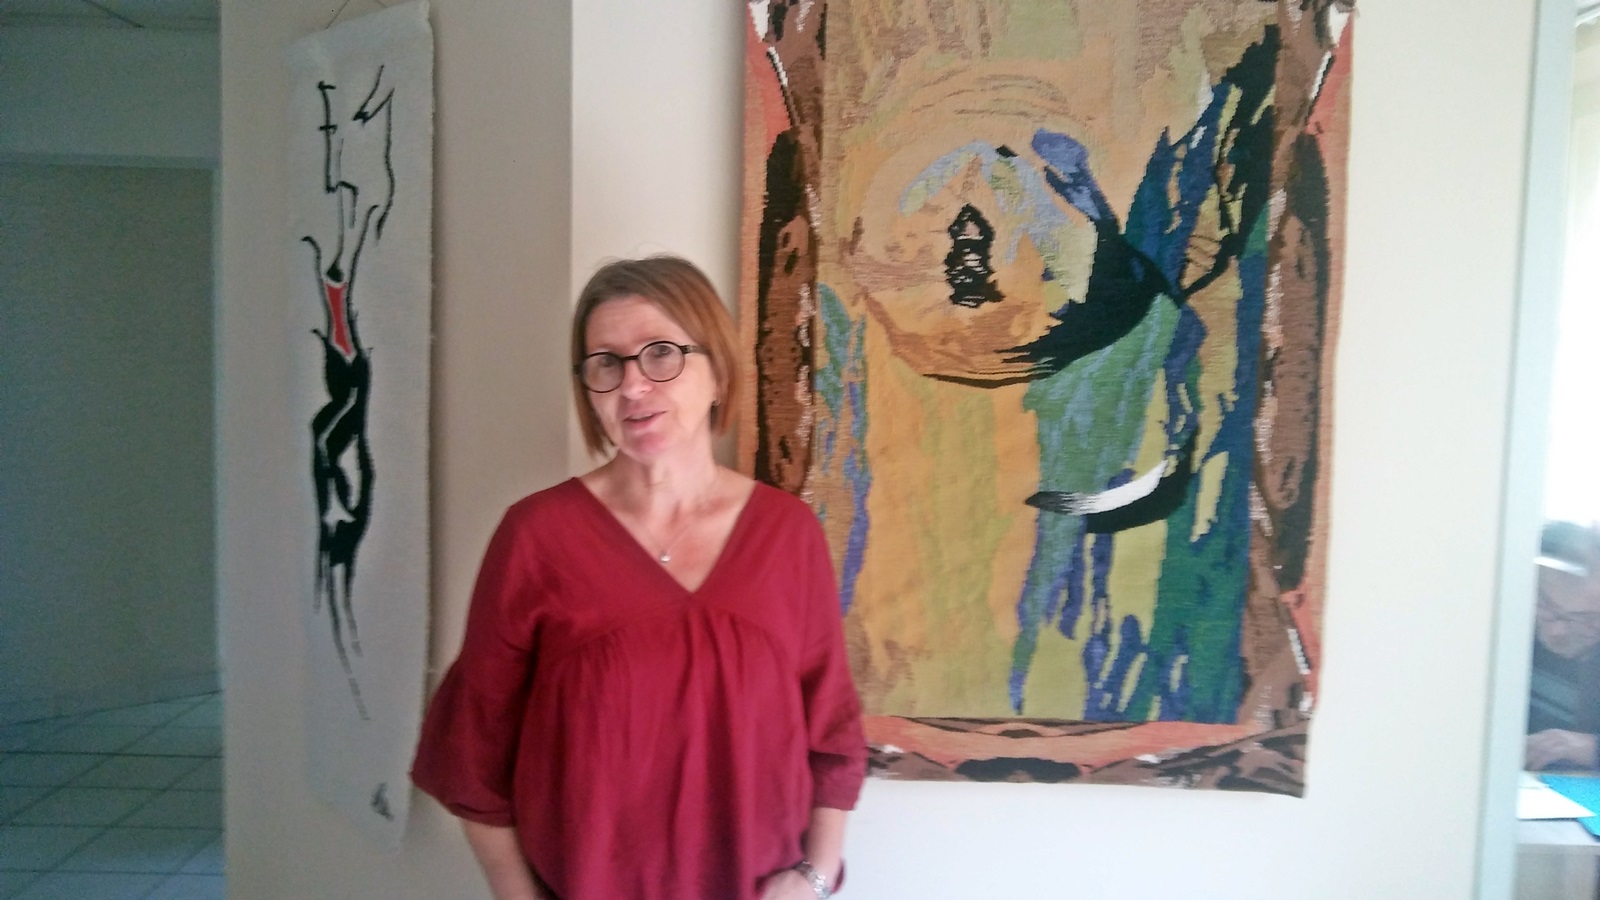 Sous les doigts de Valérie Vatan, les peintures font tapisseries